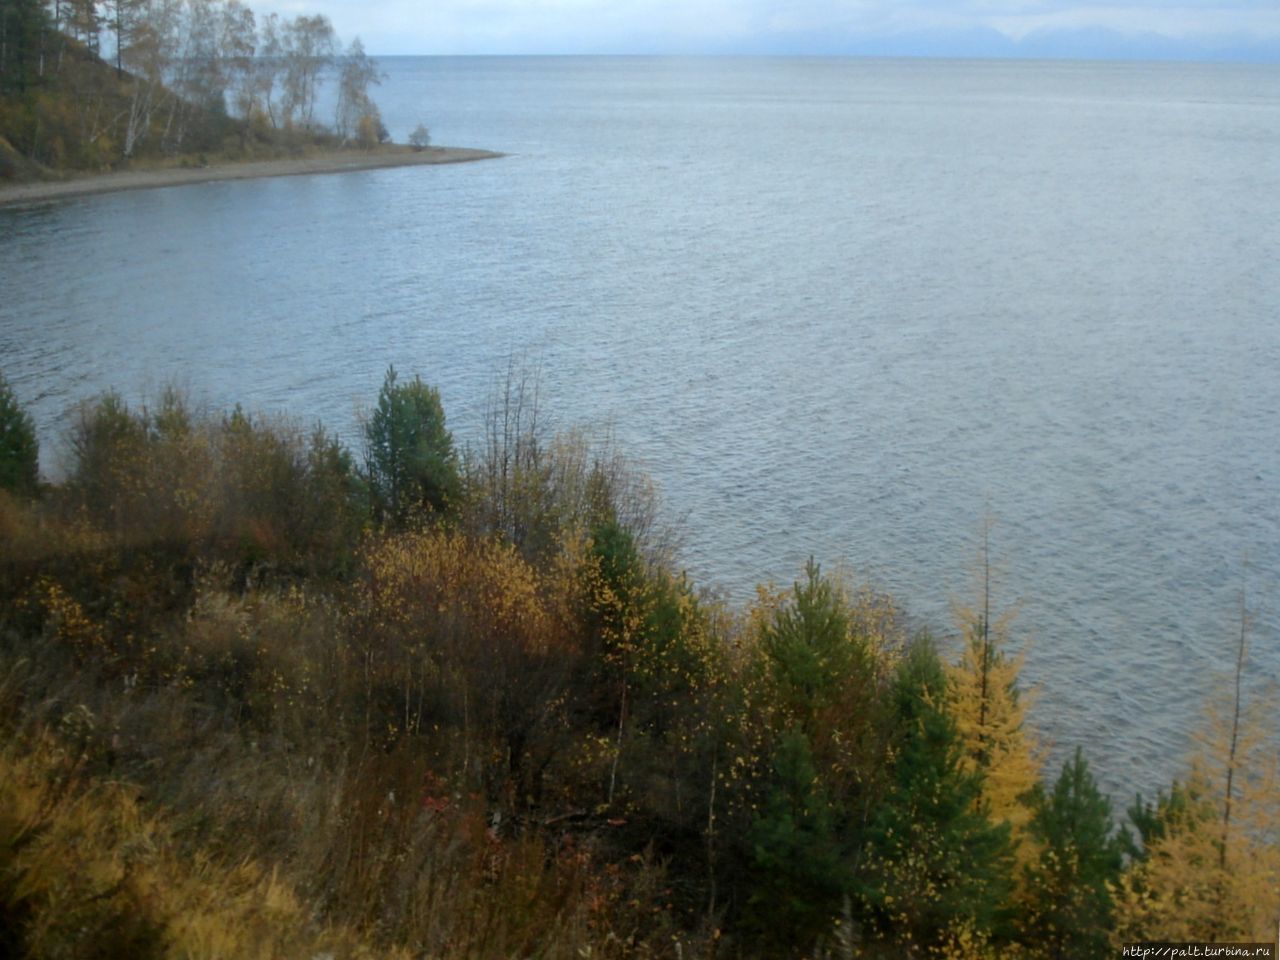 Кругобайкальская железная дорога. Романтика озеро Байкал, Россия